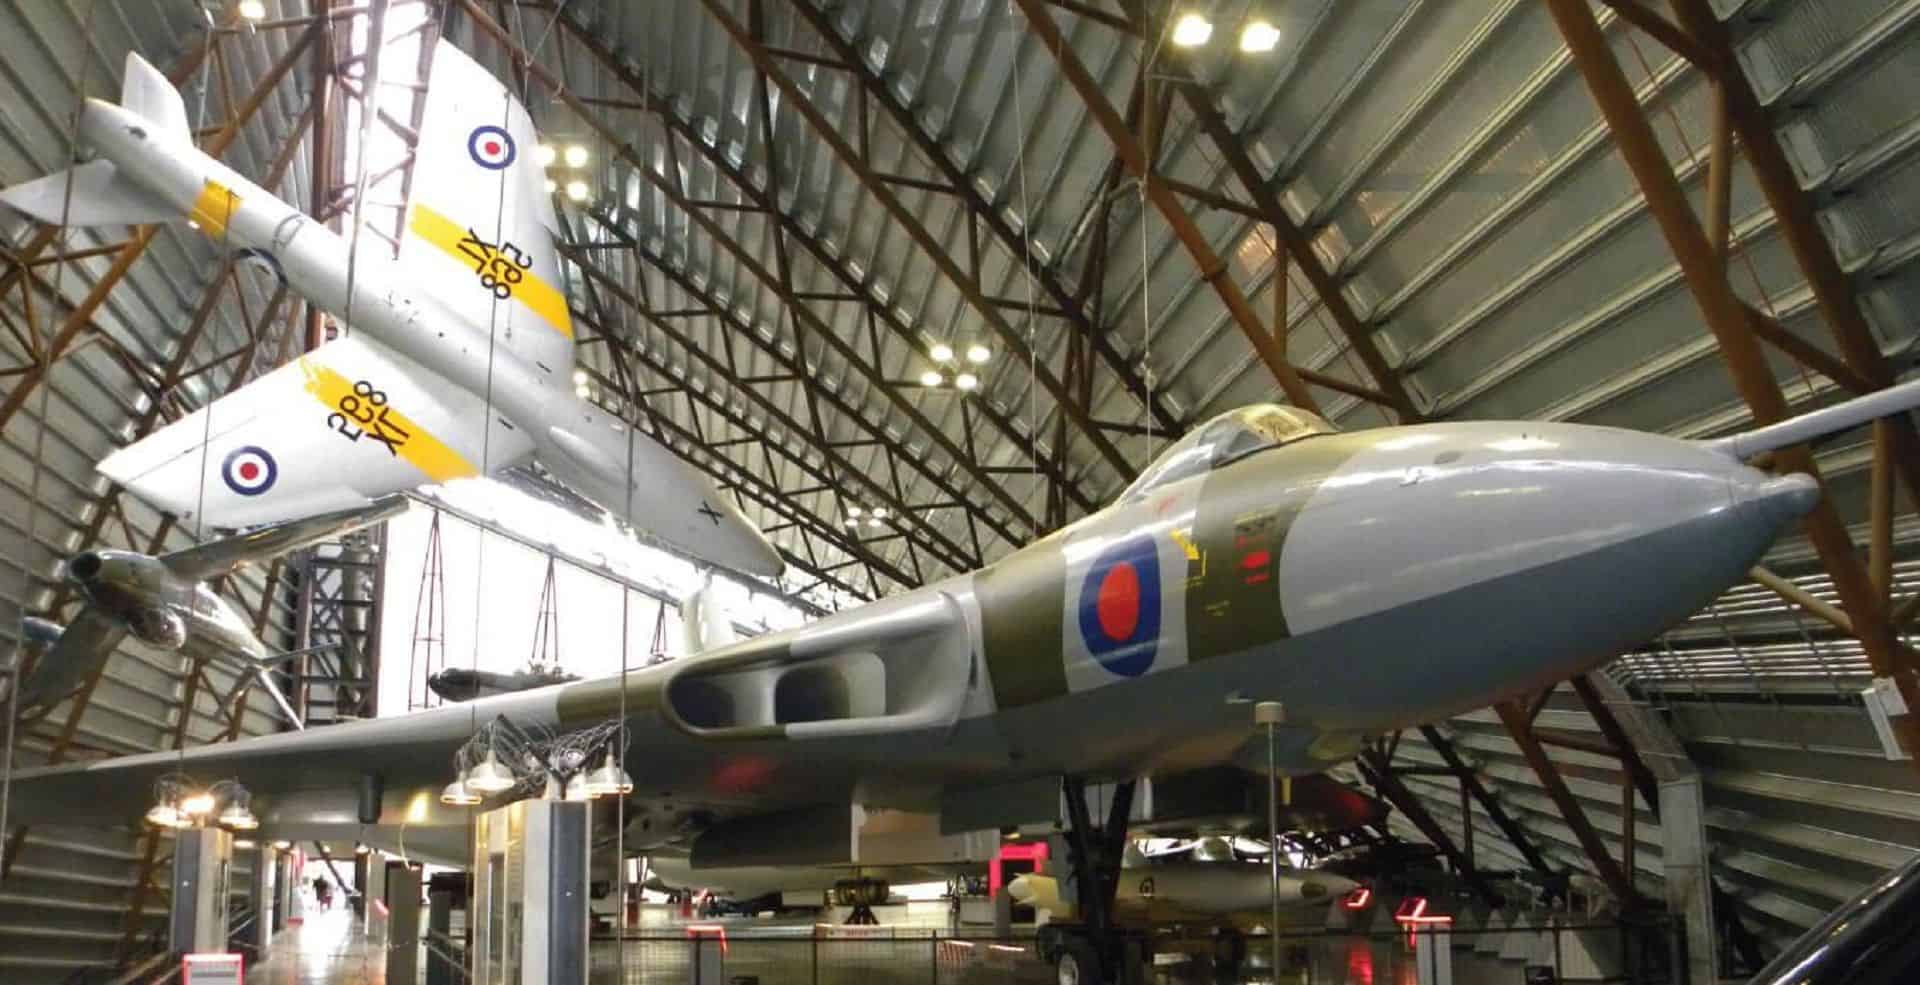 Royal Air Force Museum in UK